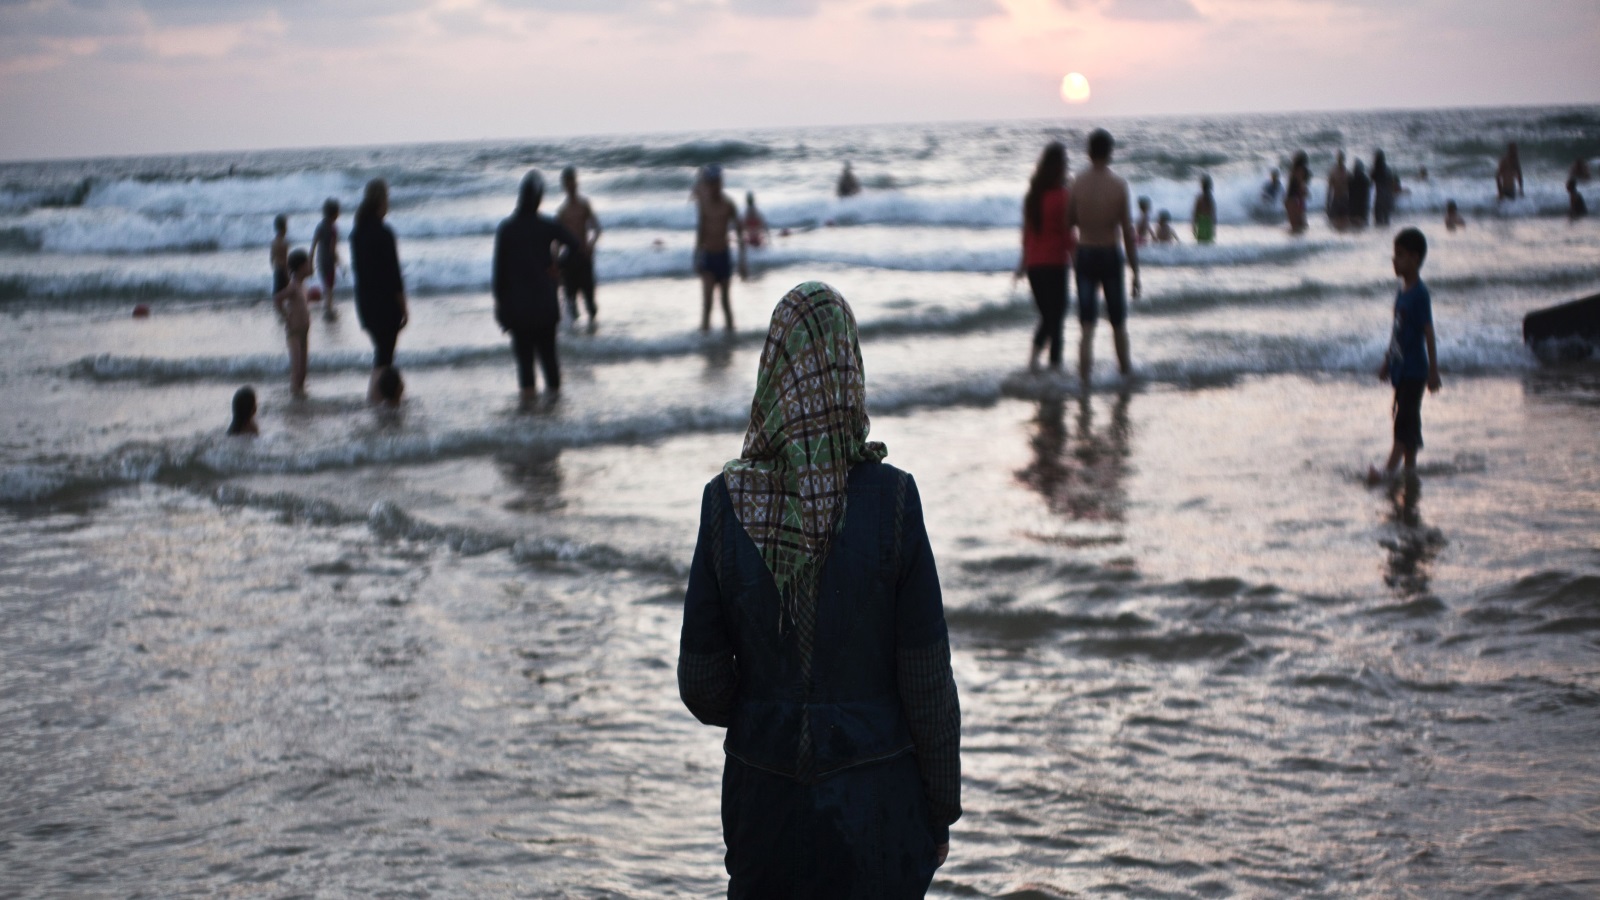 غزة التي تسكنها في ليالي كثيرة أصوات مزعجة خارجة عن أي منطق تأتي لتؤنس ساكنيها وتذكرهم بأنهم ما زالوا هدفا شهيا طالما لم يبتلعها البحر